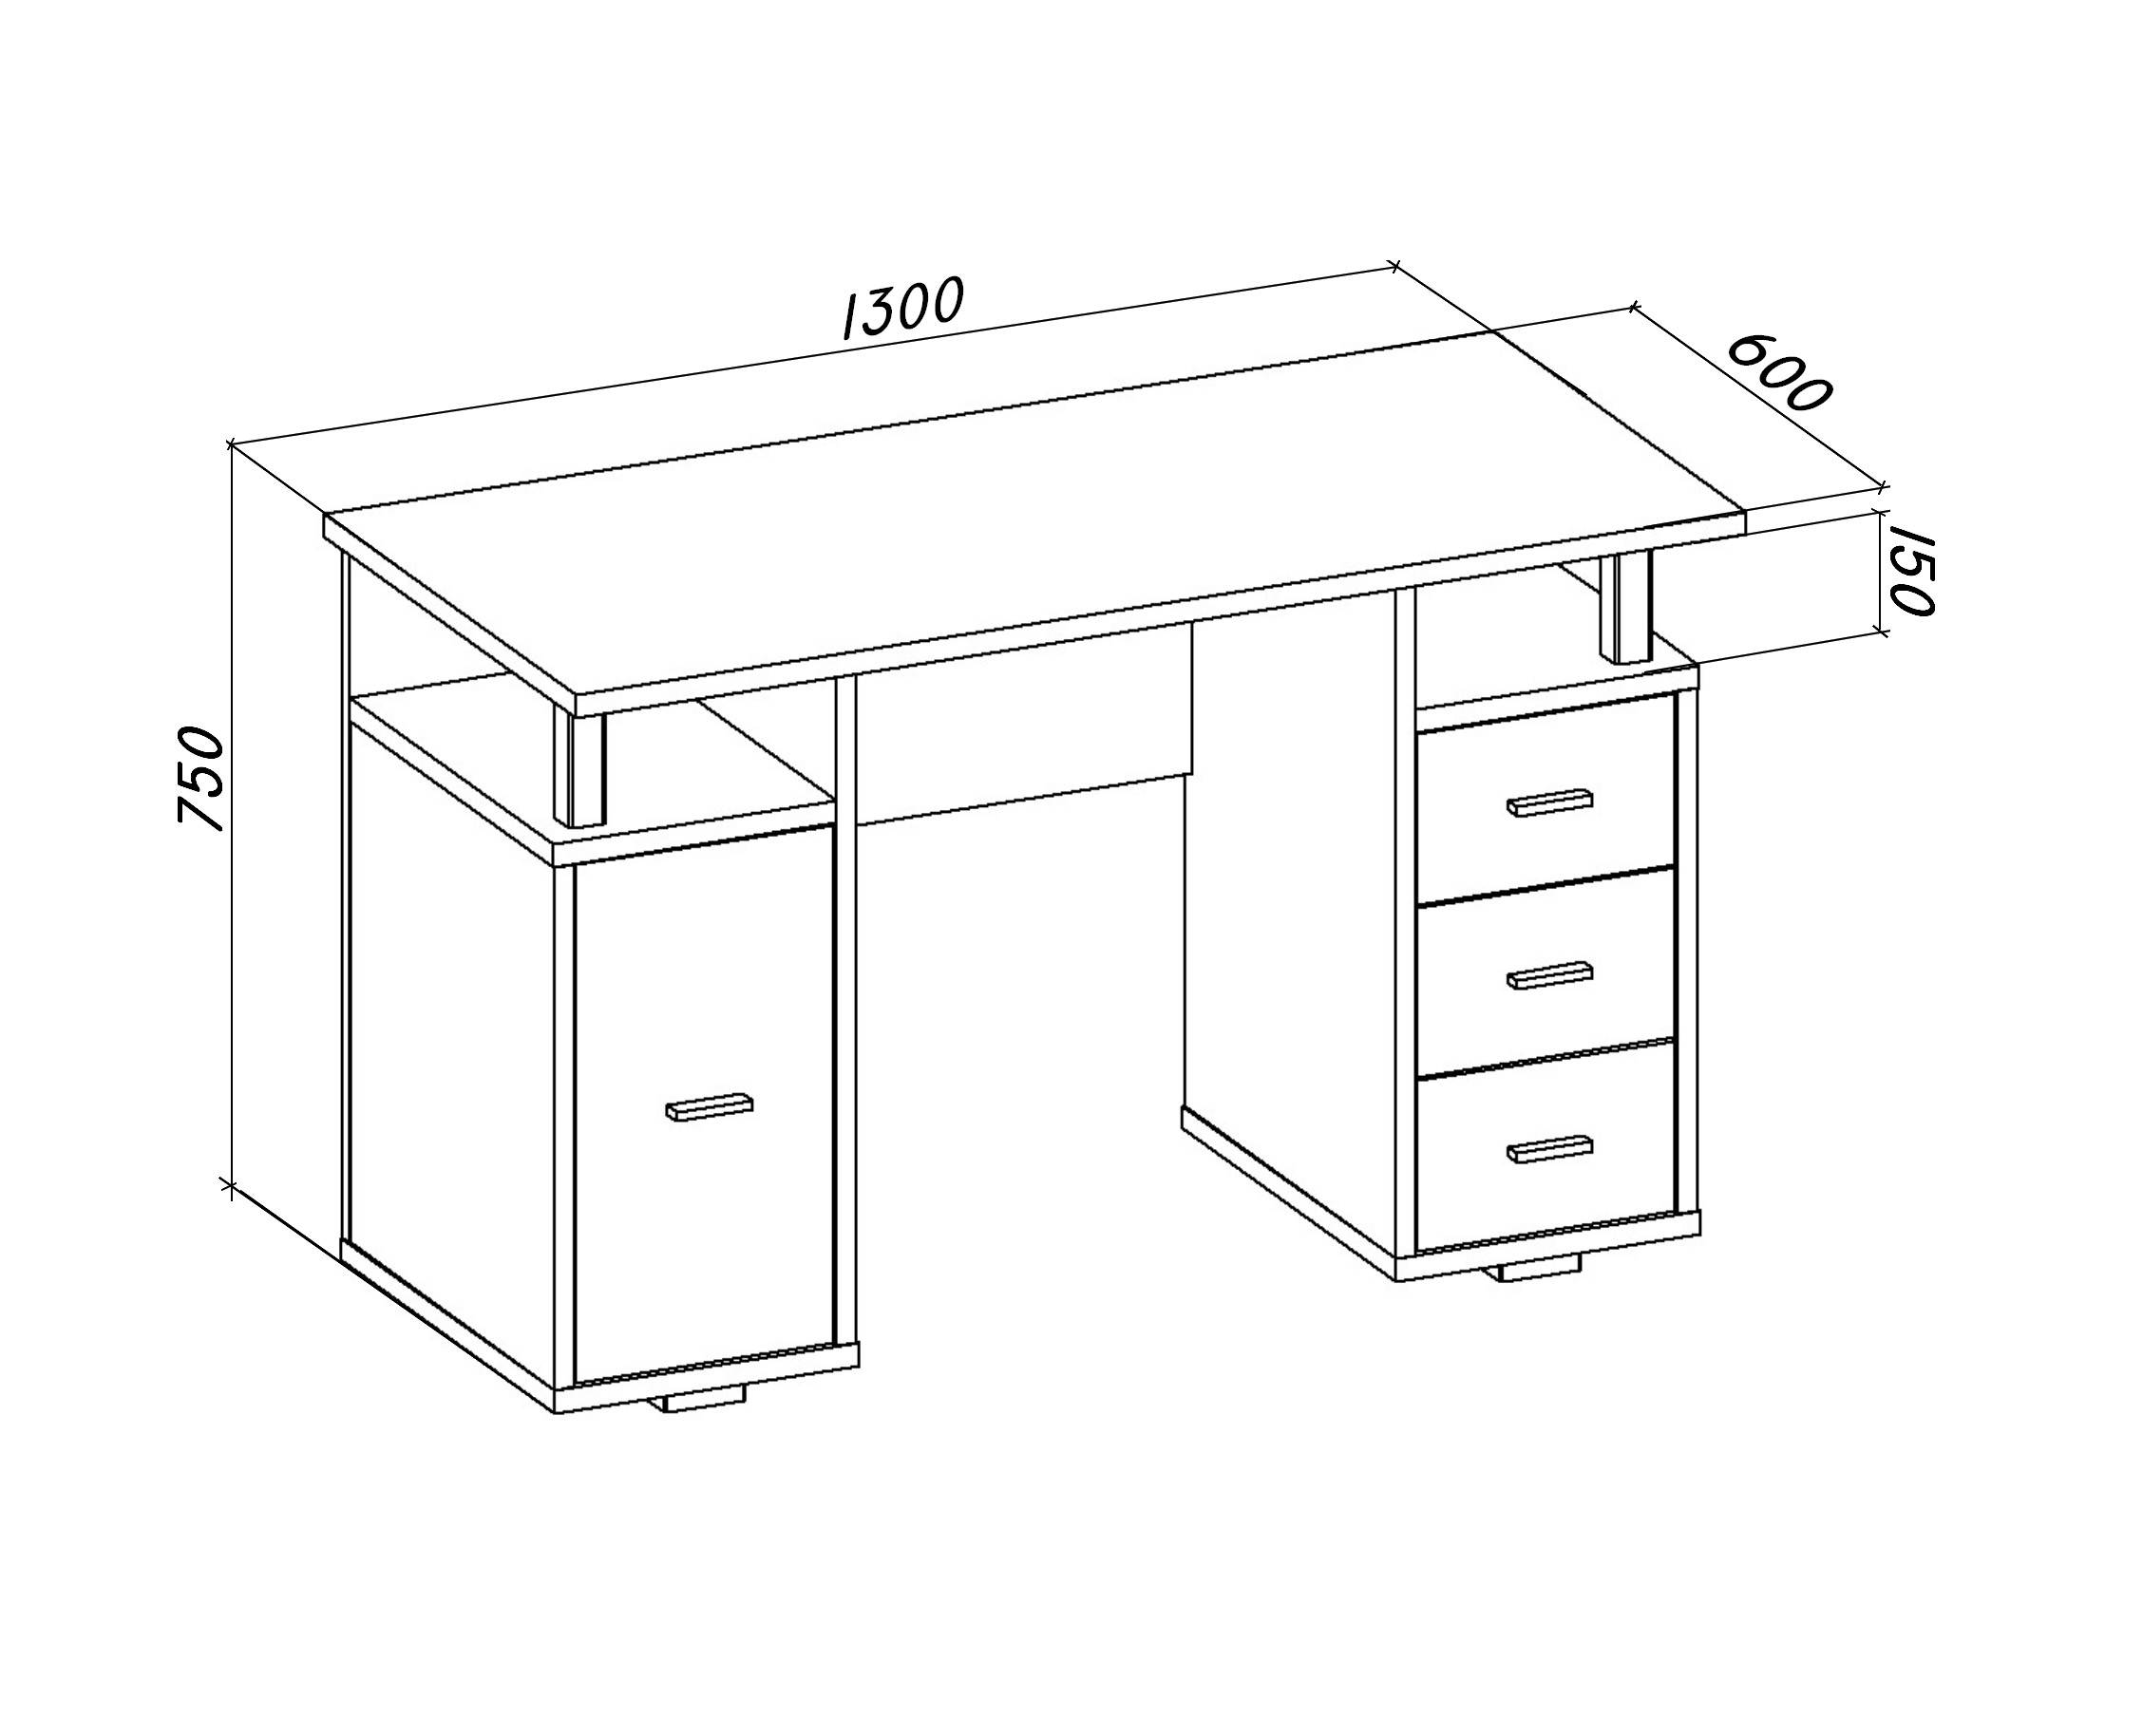 Размеры кухонных столов (28 фото): стандартная высота обеденного стола на кухне от пола, типовые стандарты 60х60, 60х80 см и другие размеры